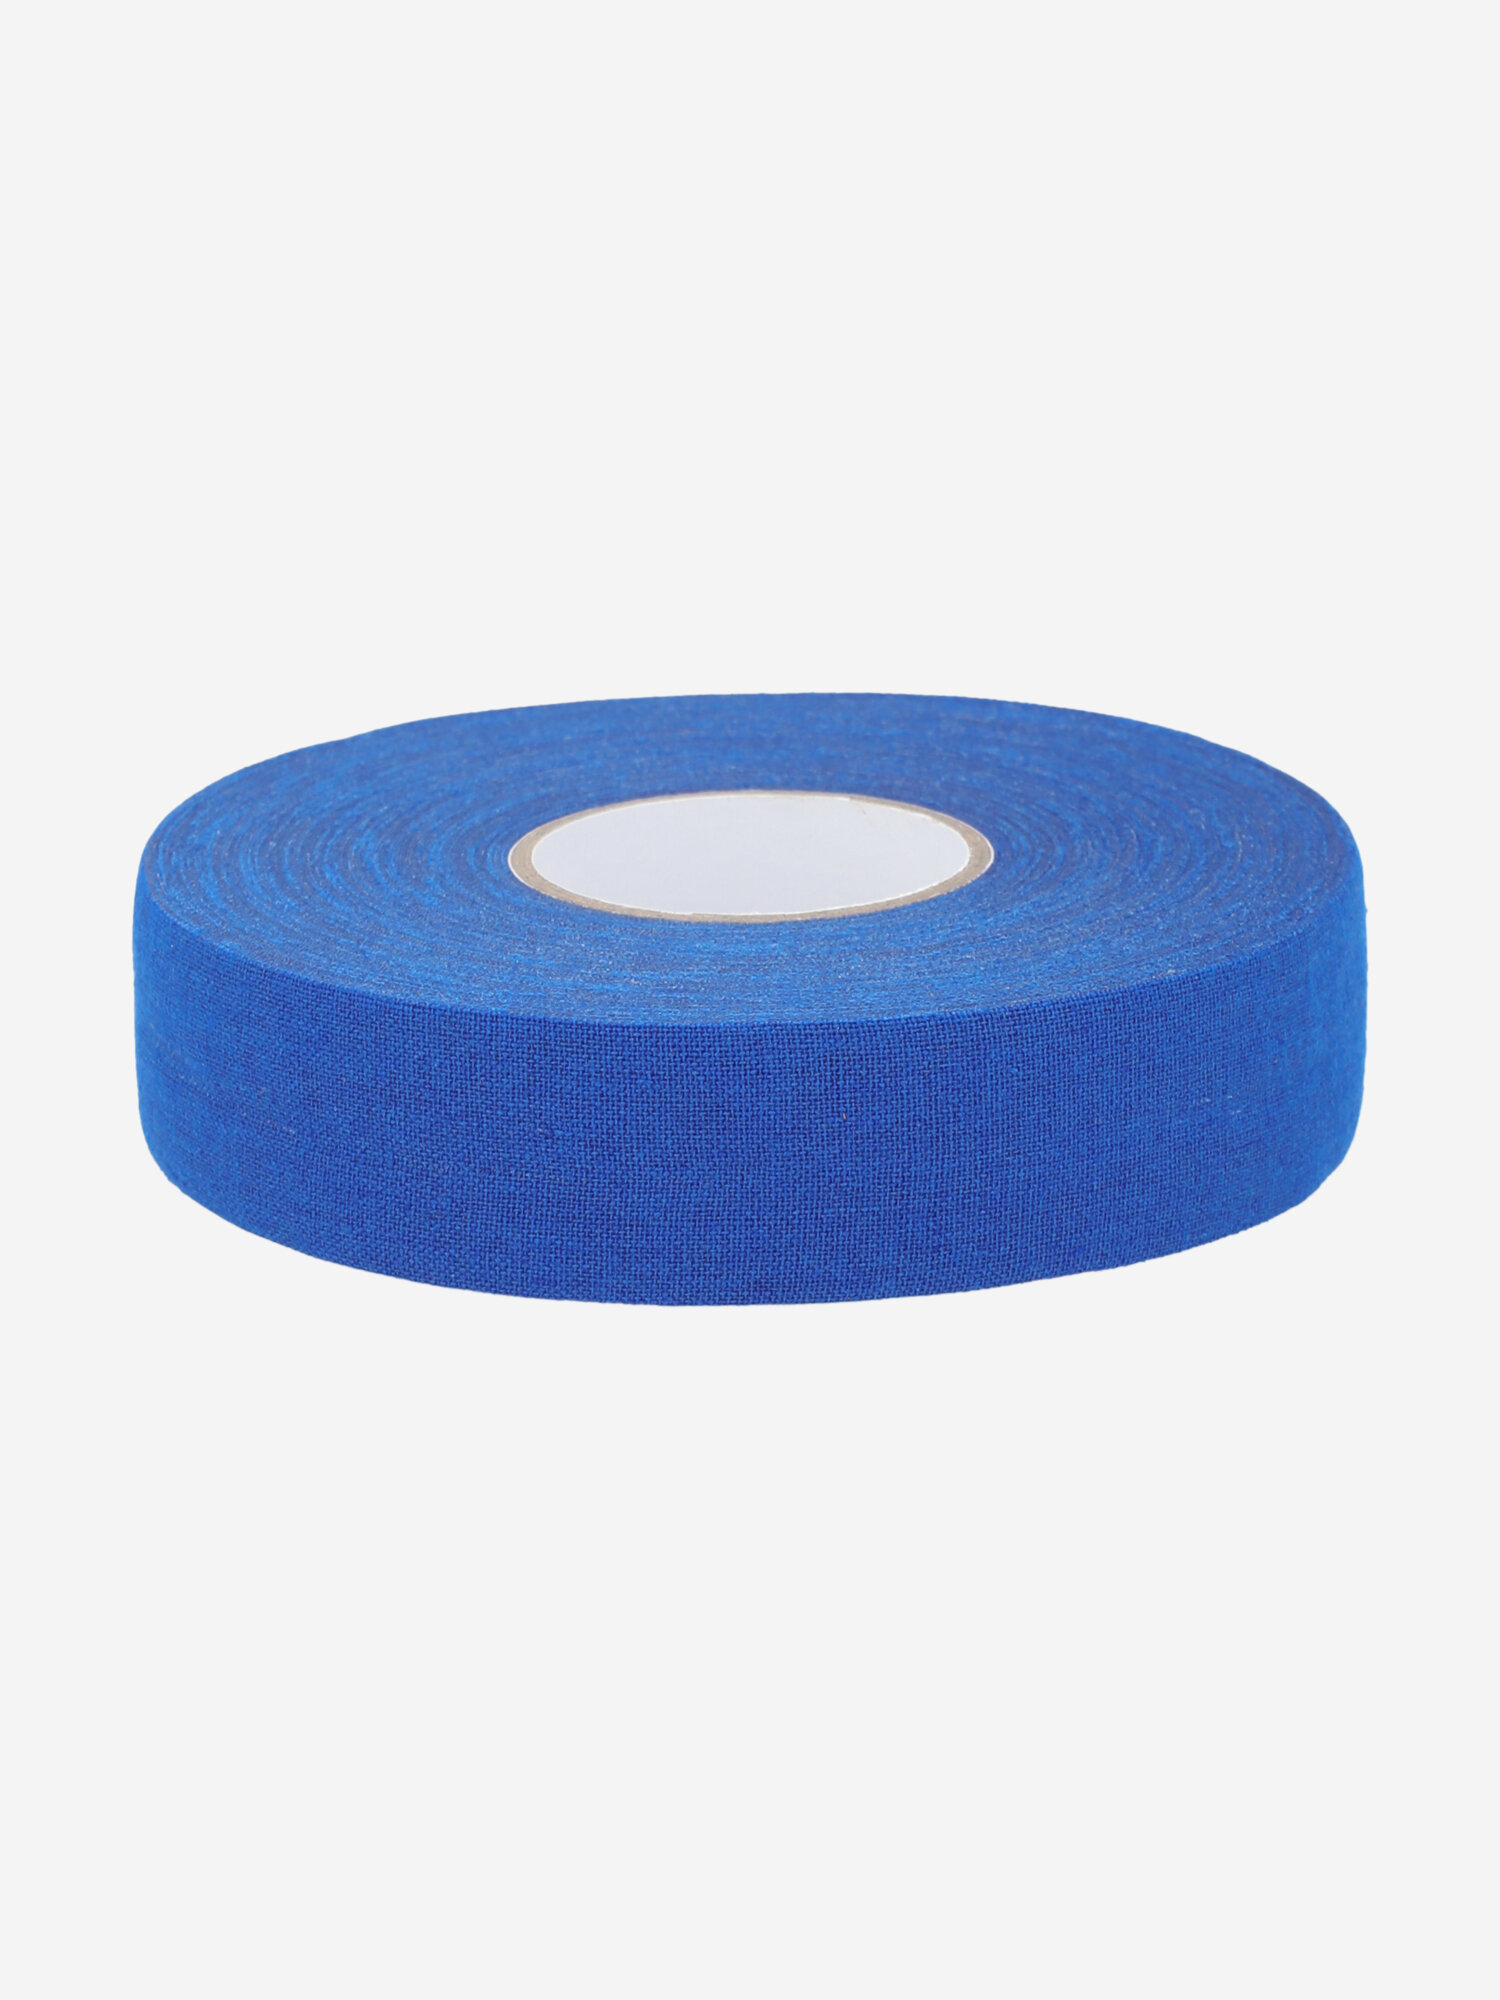 Лента для клюшек Nordway Tape 25 мм Синий; RUS: Без размера, Ориг: one size